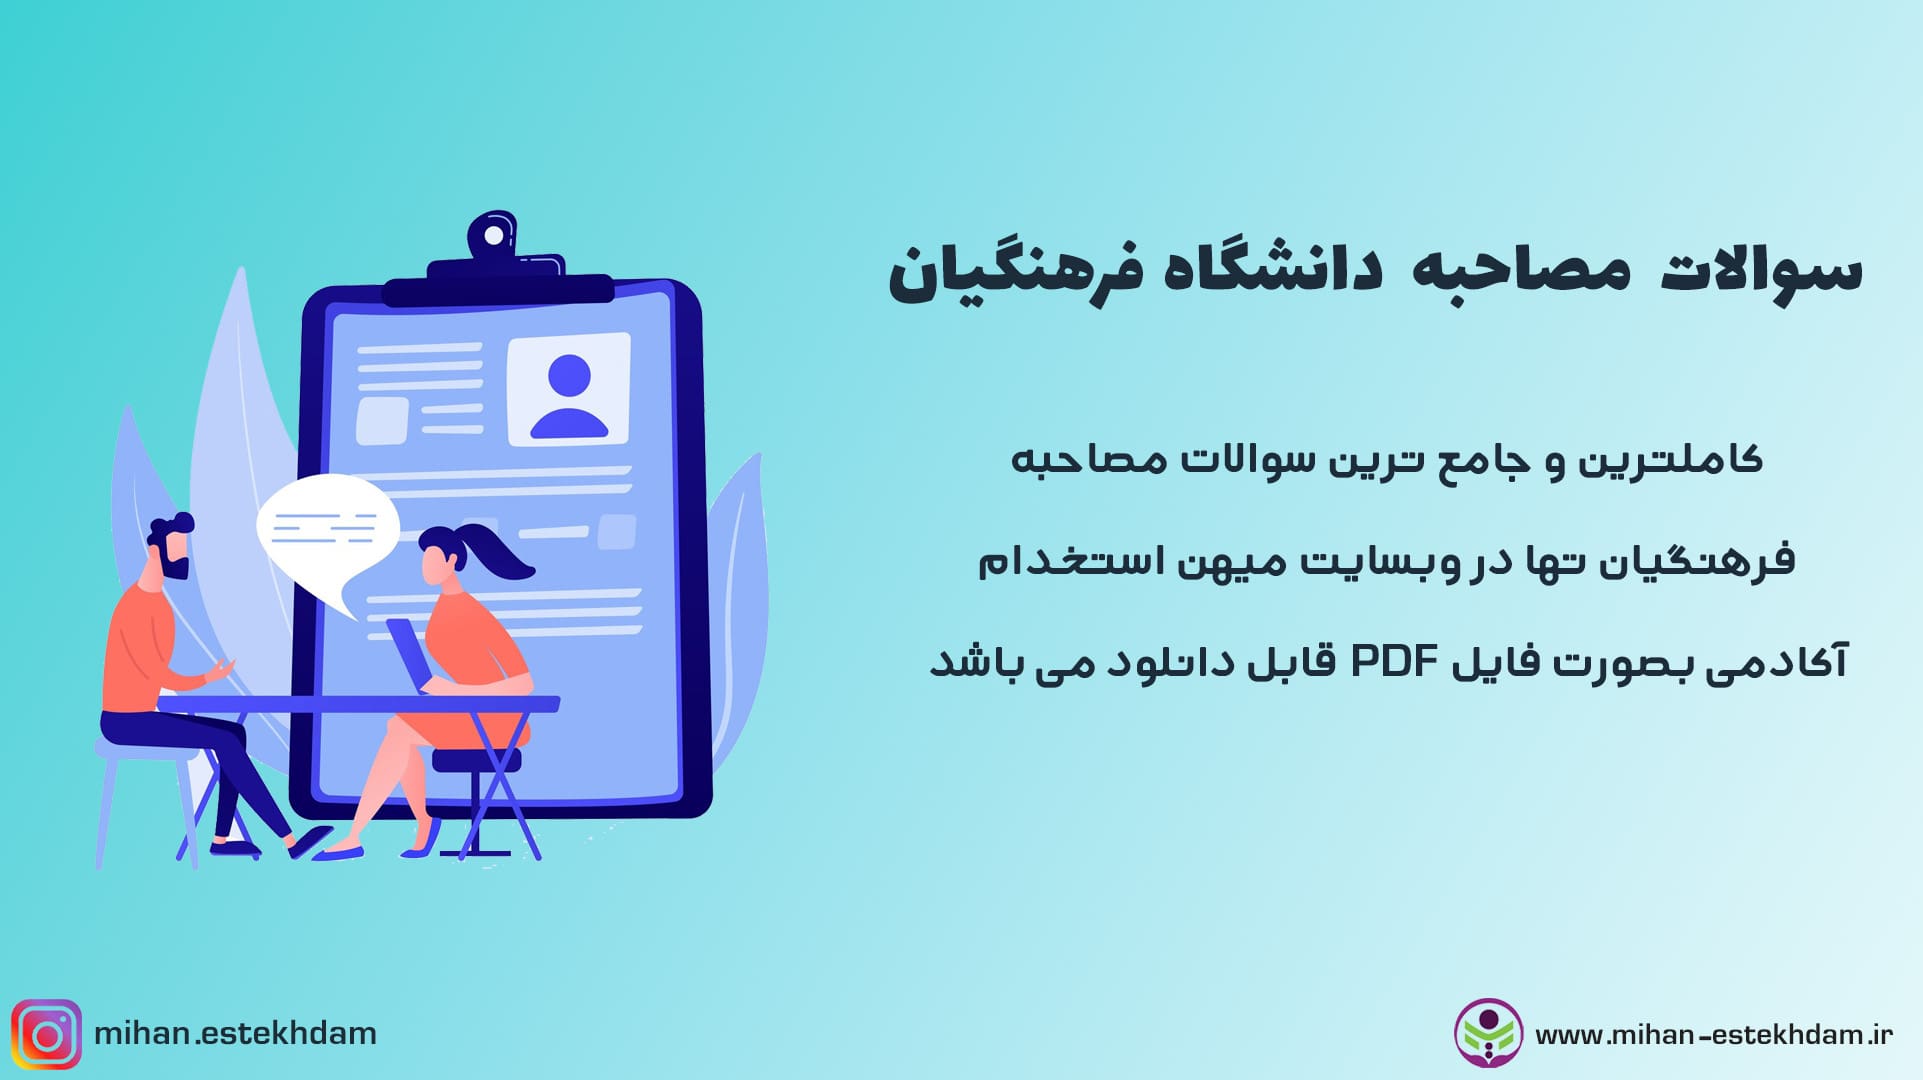 دانلود سوالات مصاحبه دانشگاه فرهنگیان با جواب PDF